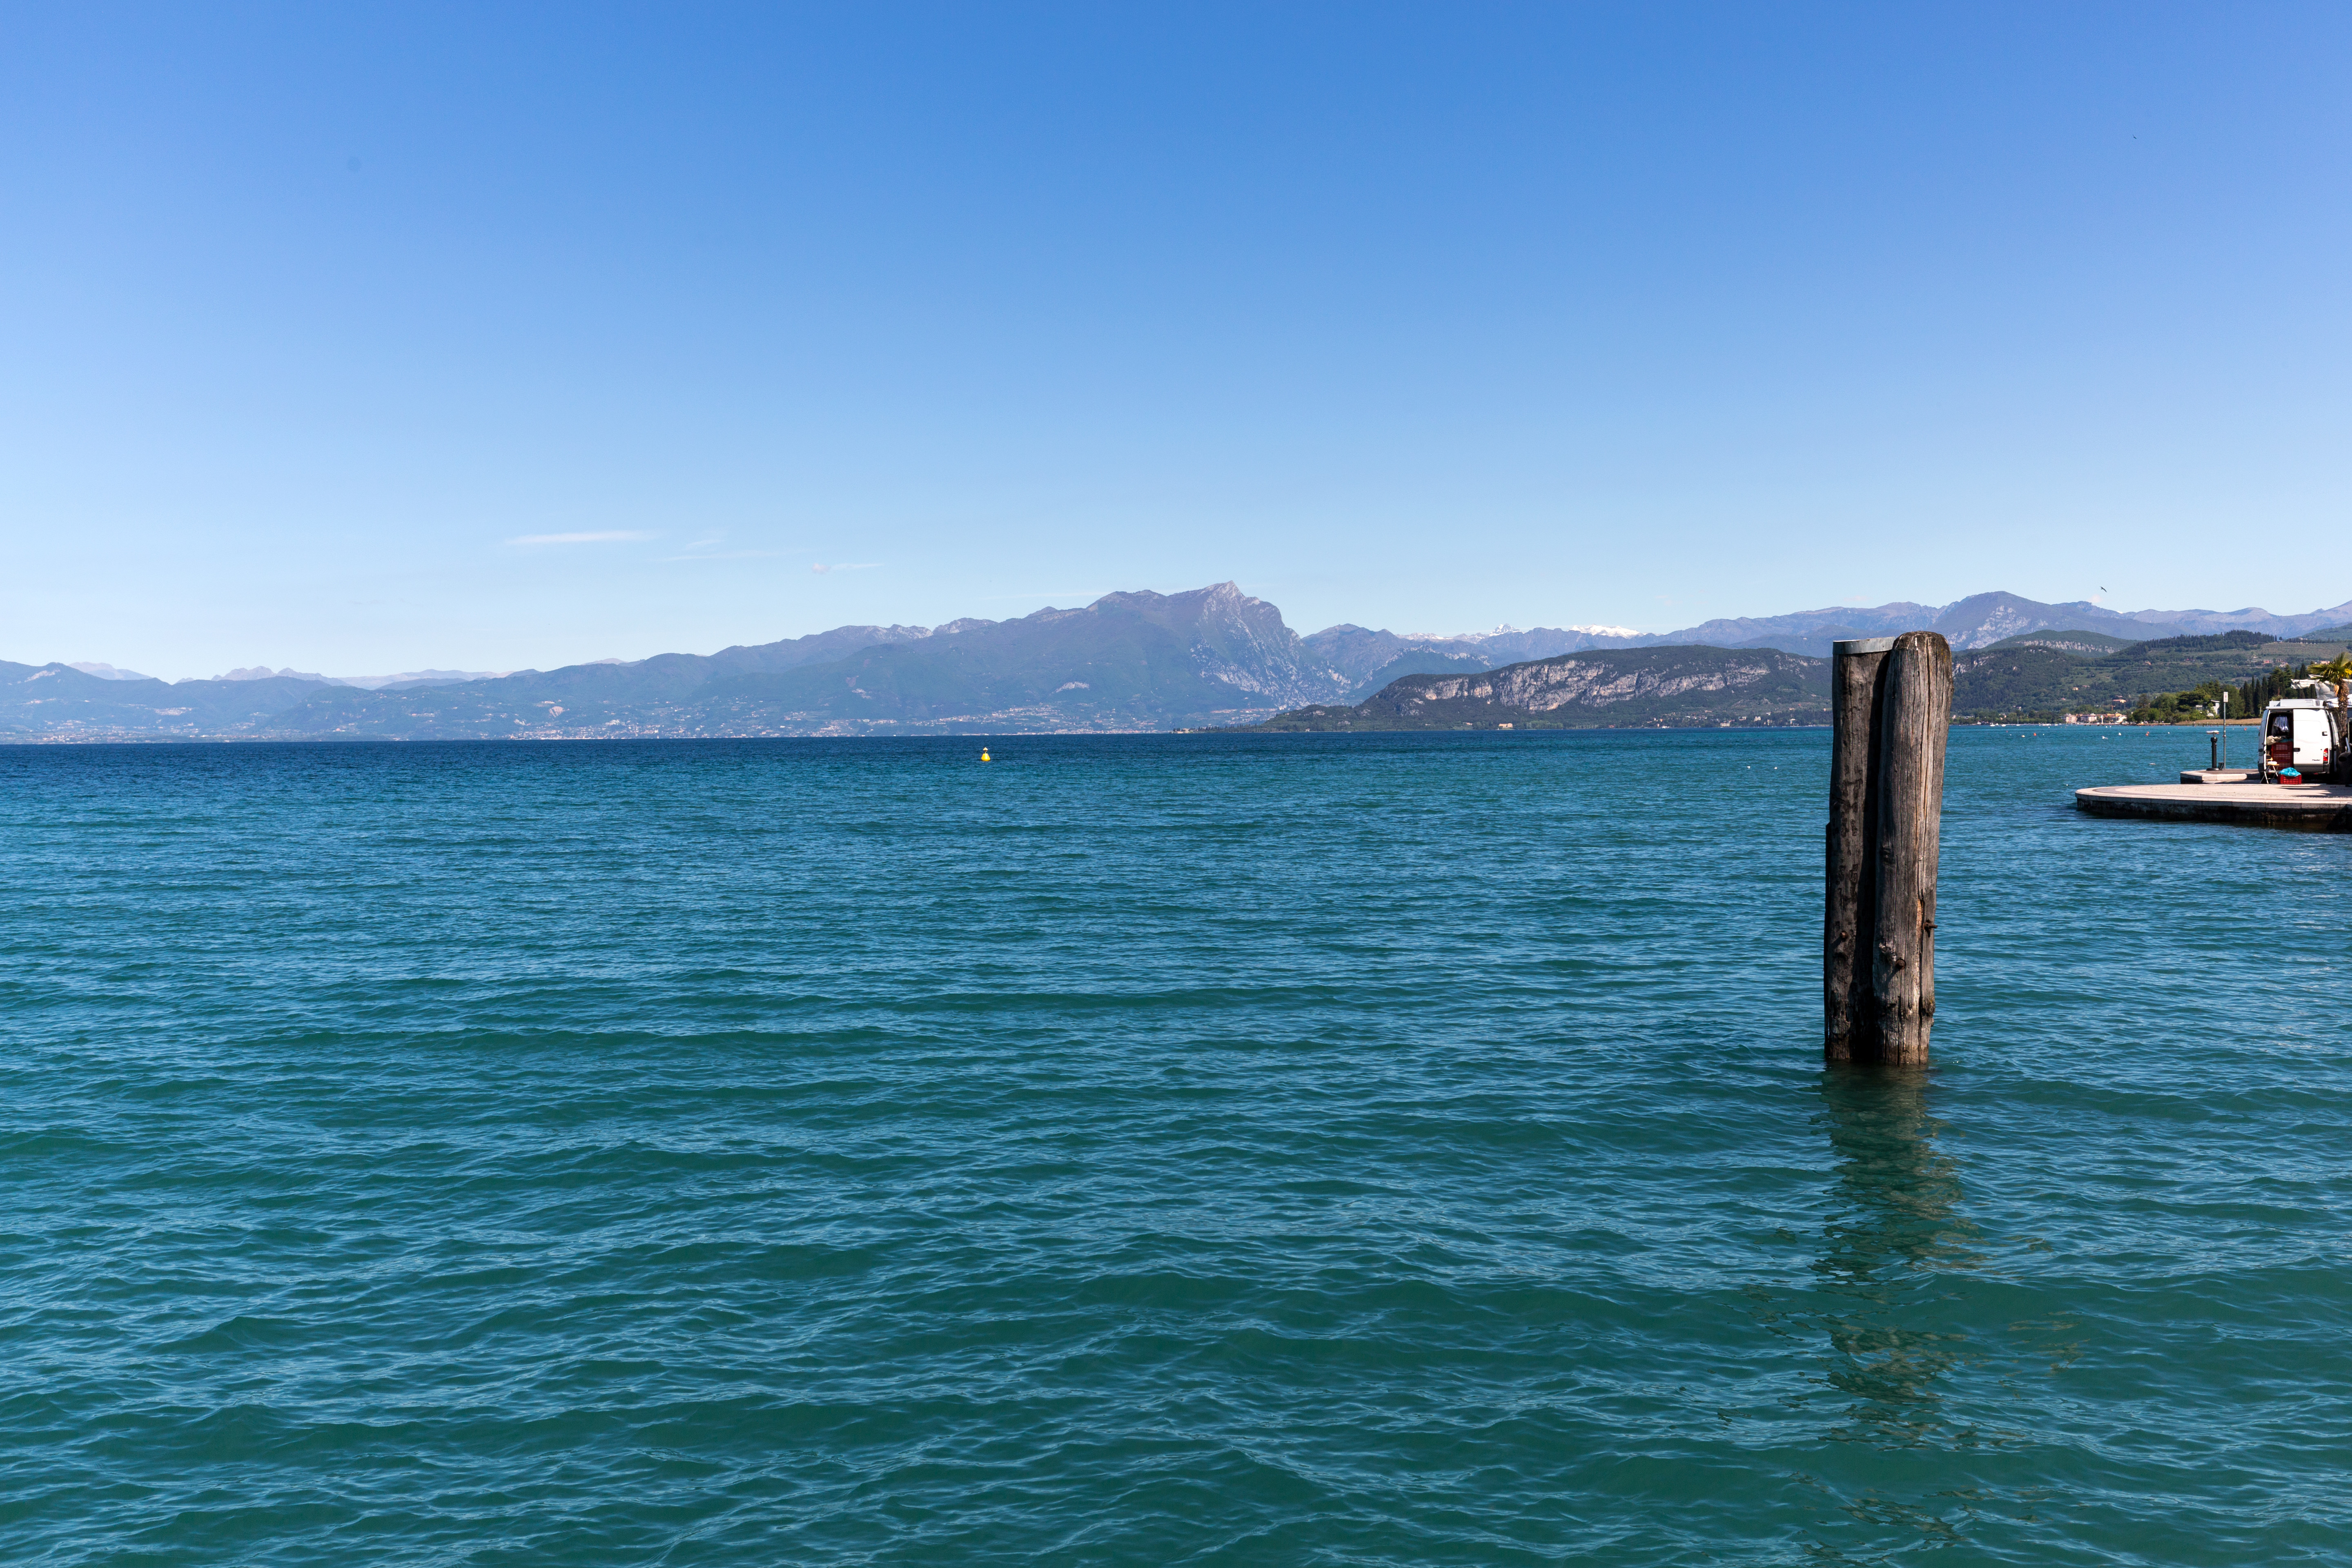 Nivelul de apă foarte scăzut al lacului Garda, Italia, șochează turiștii. „Apa nu mai era acolo” | GALERIE FOTO - Imaginea 3